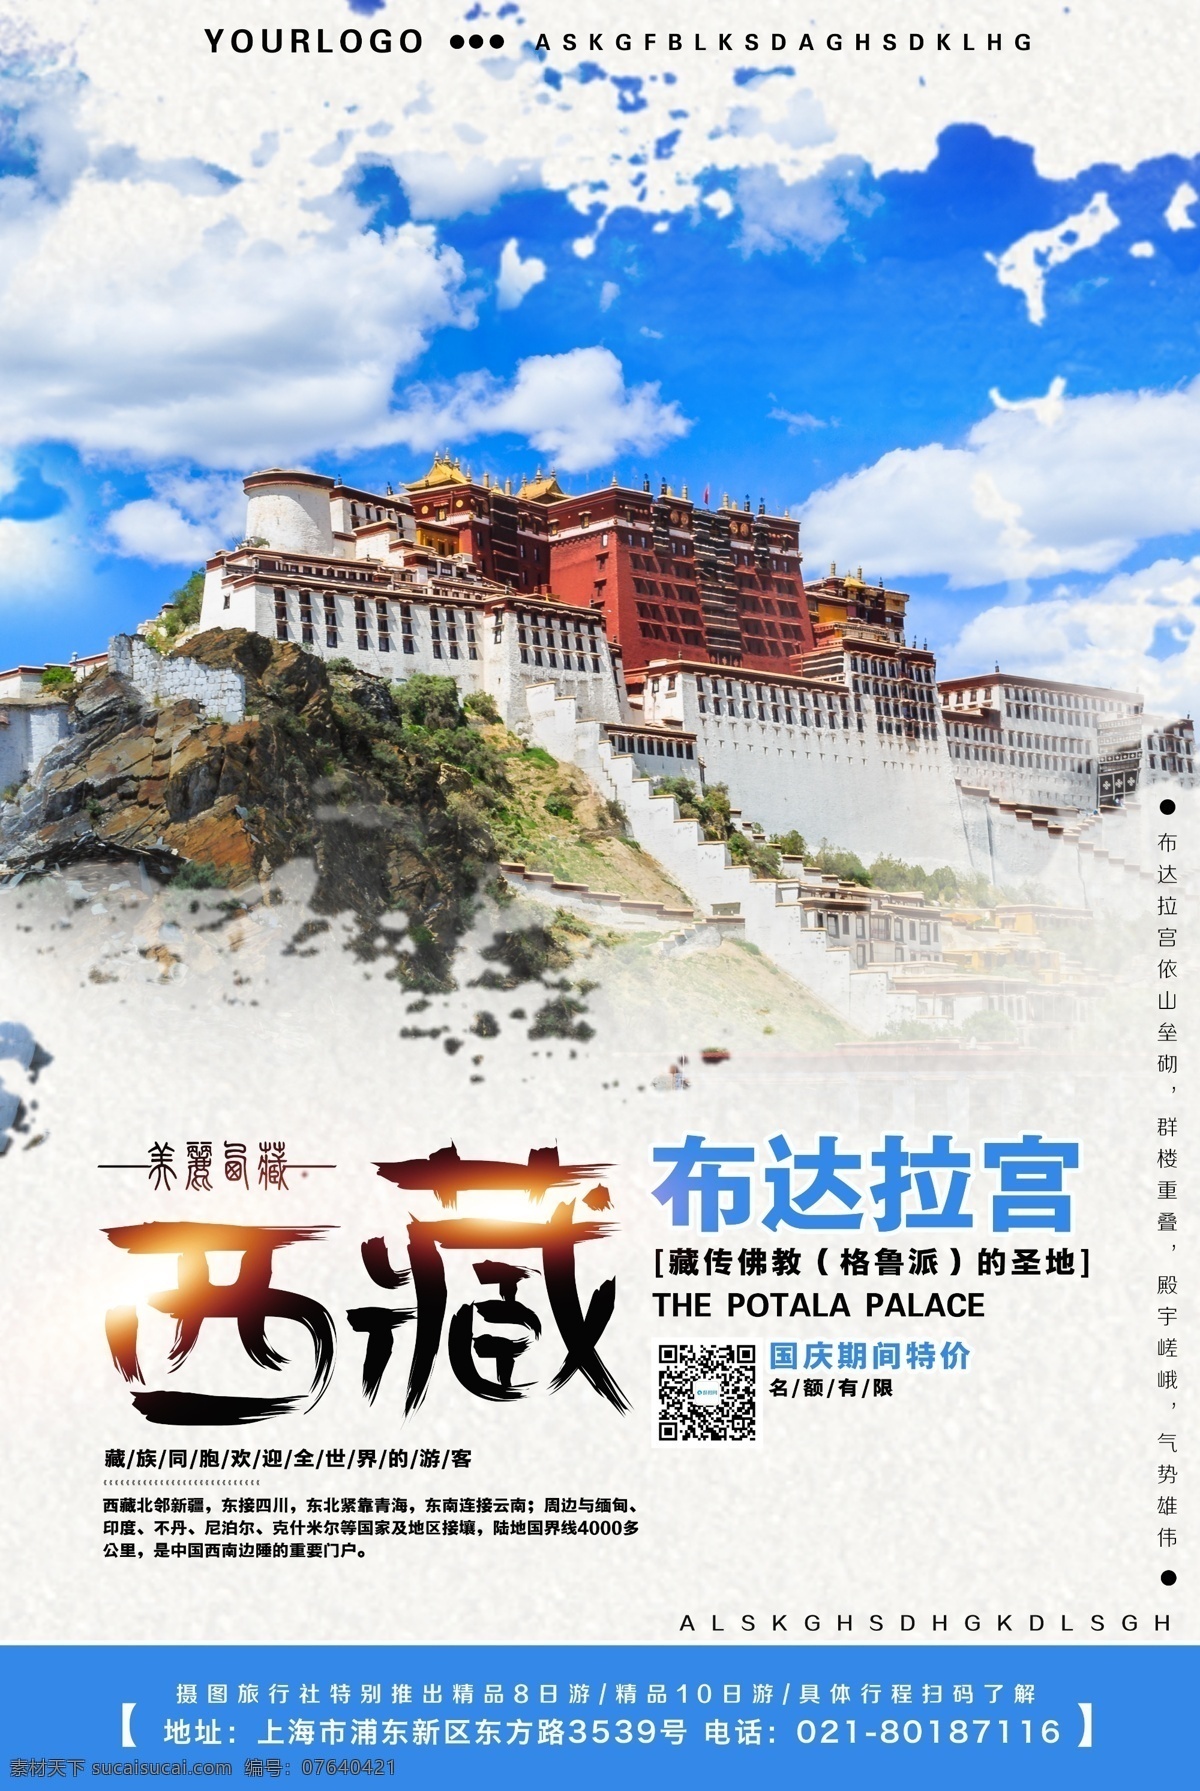 西藏旅游 宣传海报 旅游海报 旅行 路线 介绍 海报 旅游路线 景点路线 旅行社 精品线路推广 西藏旅行 布达拉宫推广